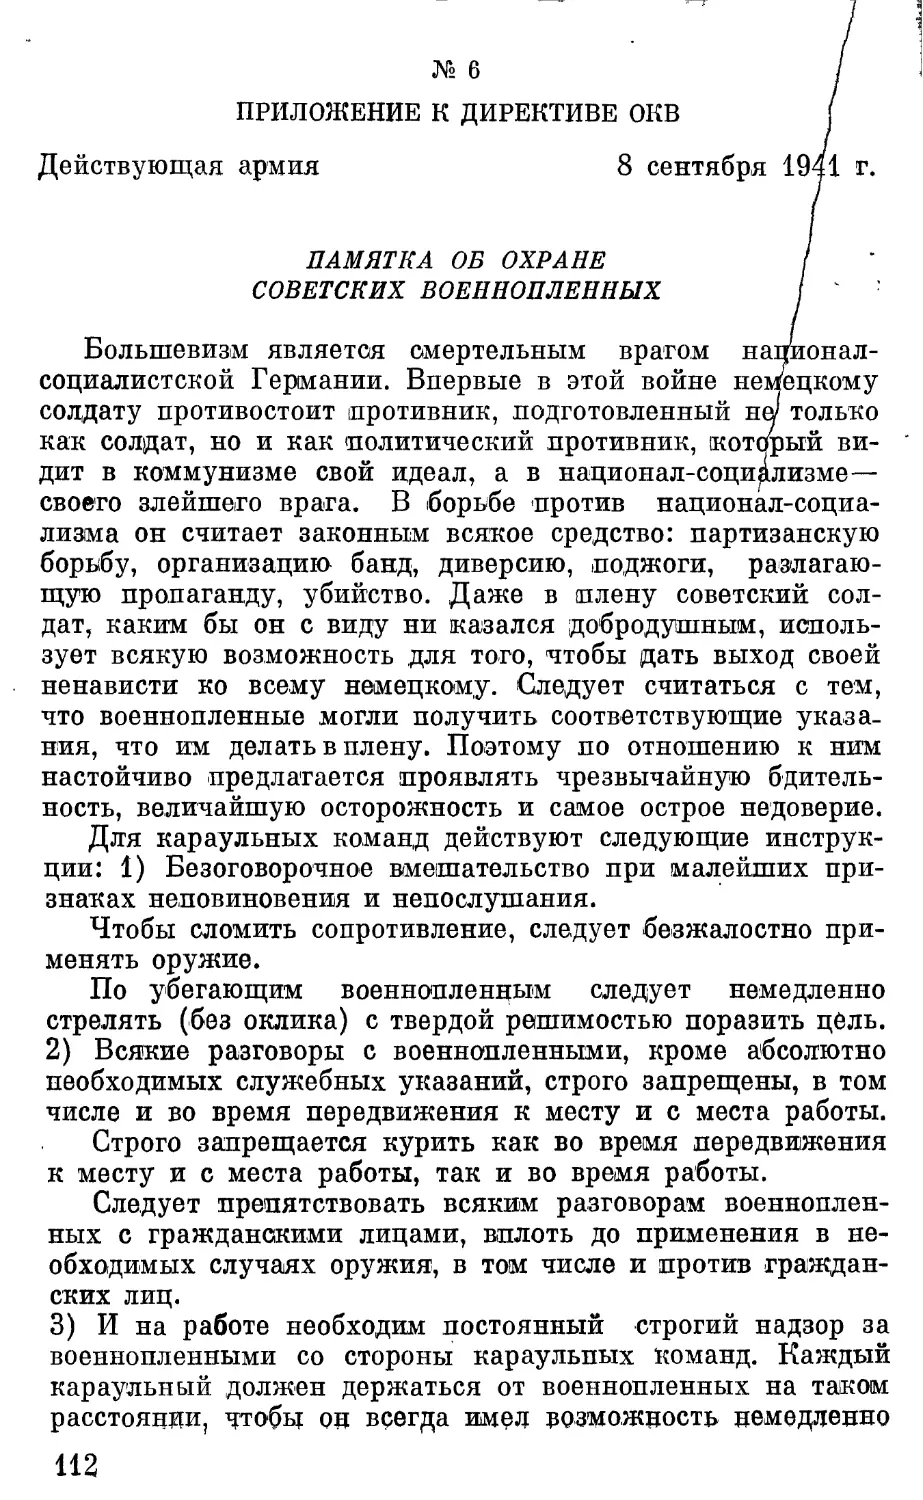 Приложение к директиве ОКБ. Памятка об охране советских военнопленных.